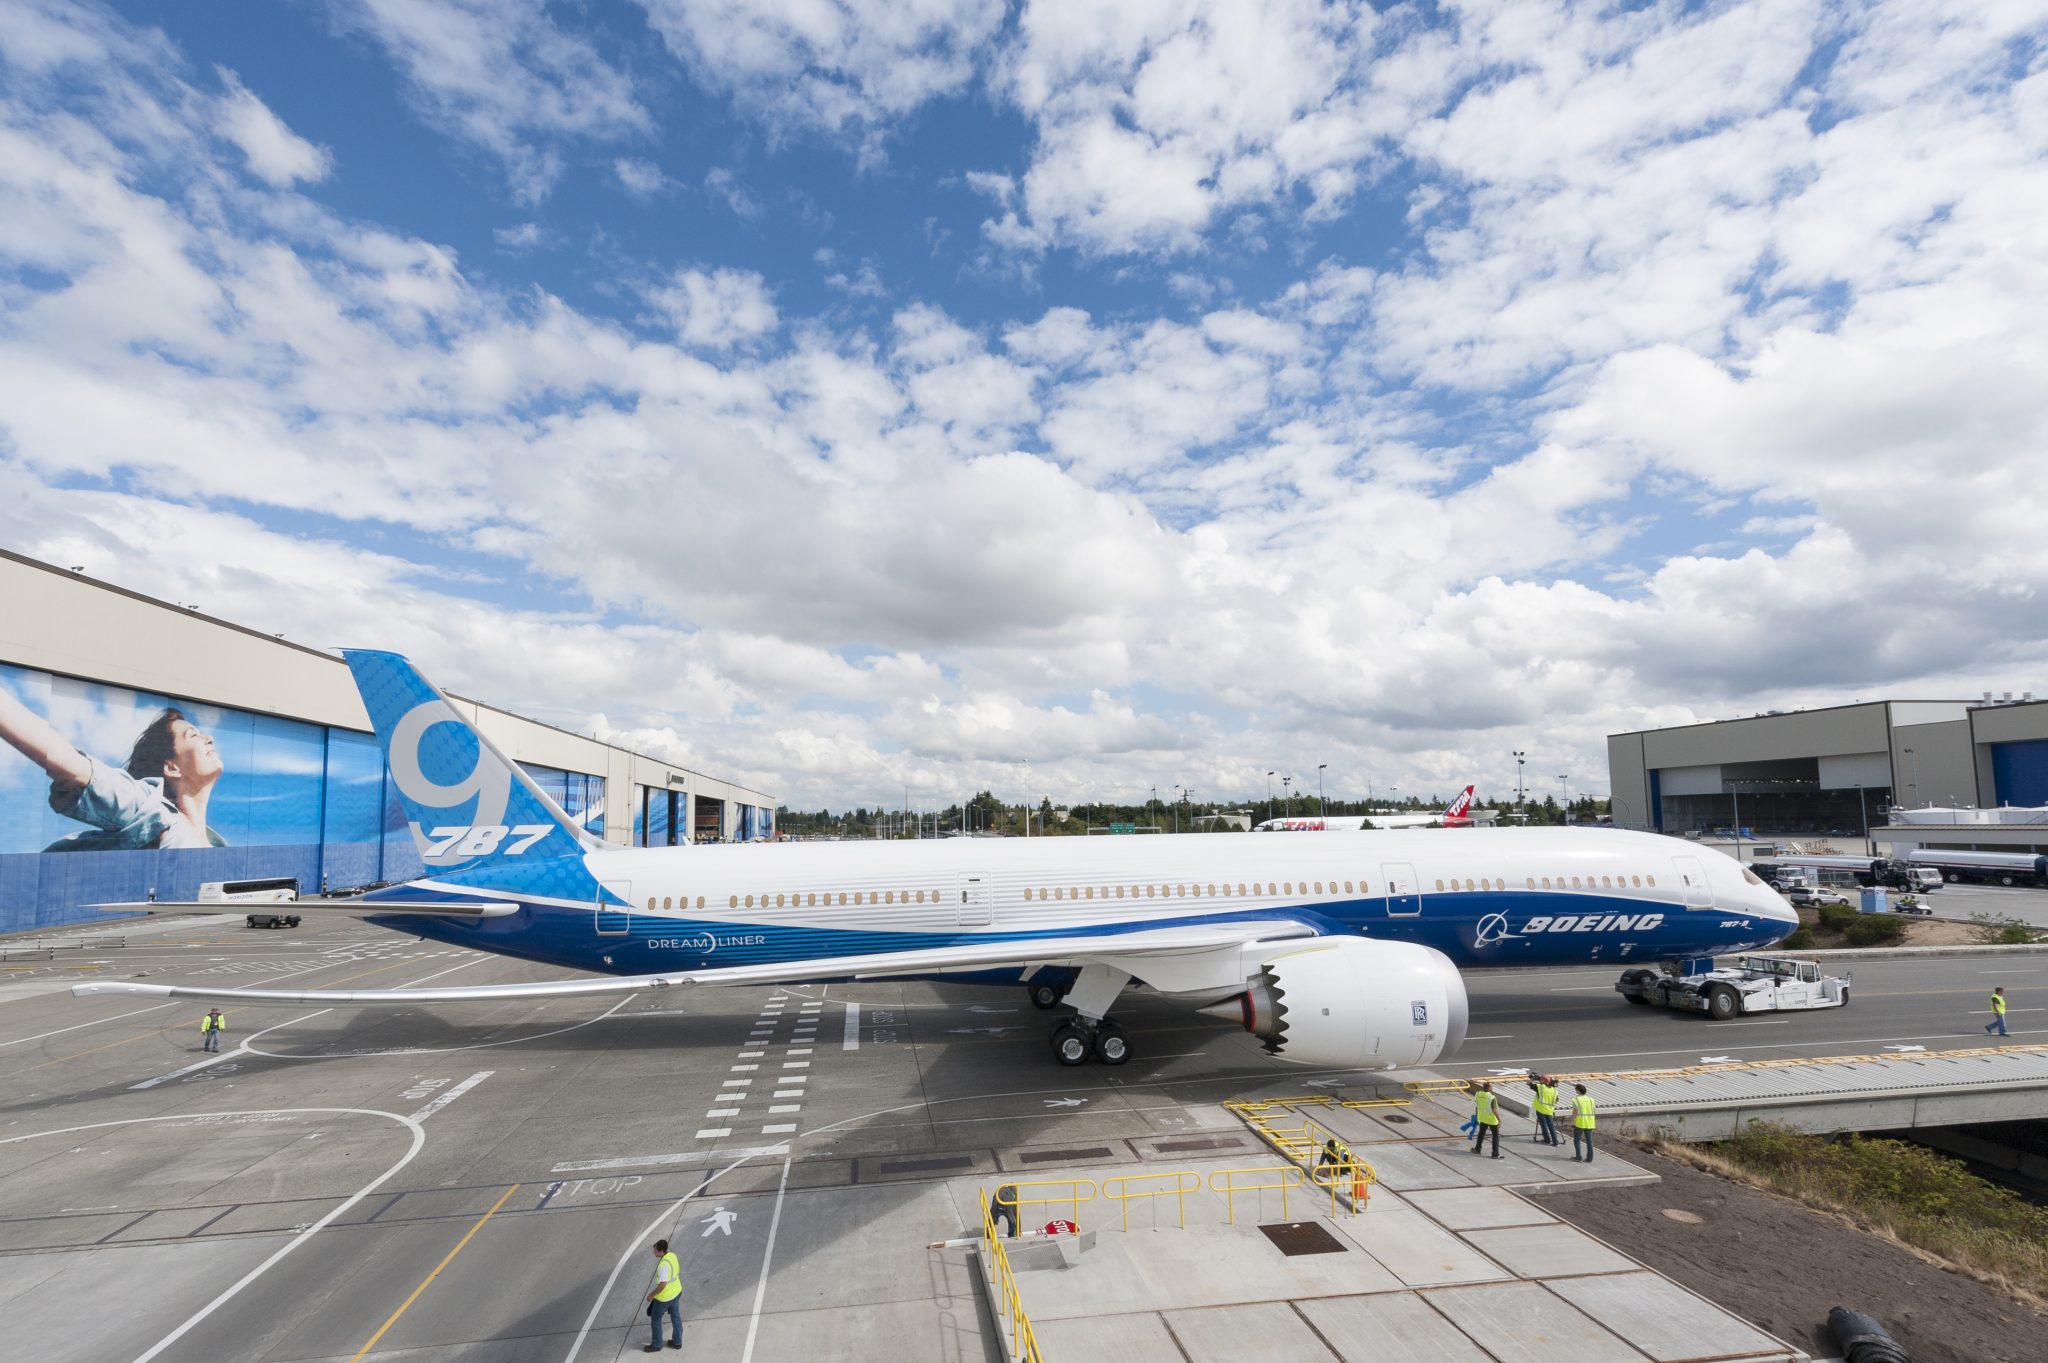 EL AL Israel Airlines celebrate delivery of first 787 Dreamliner